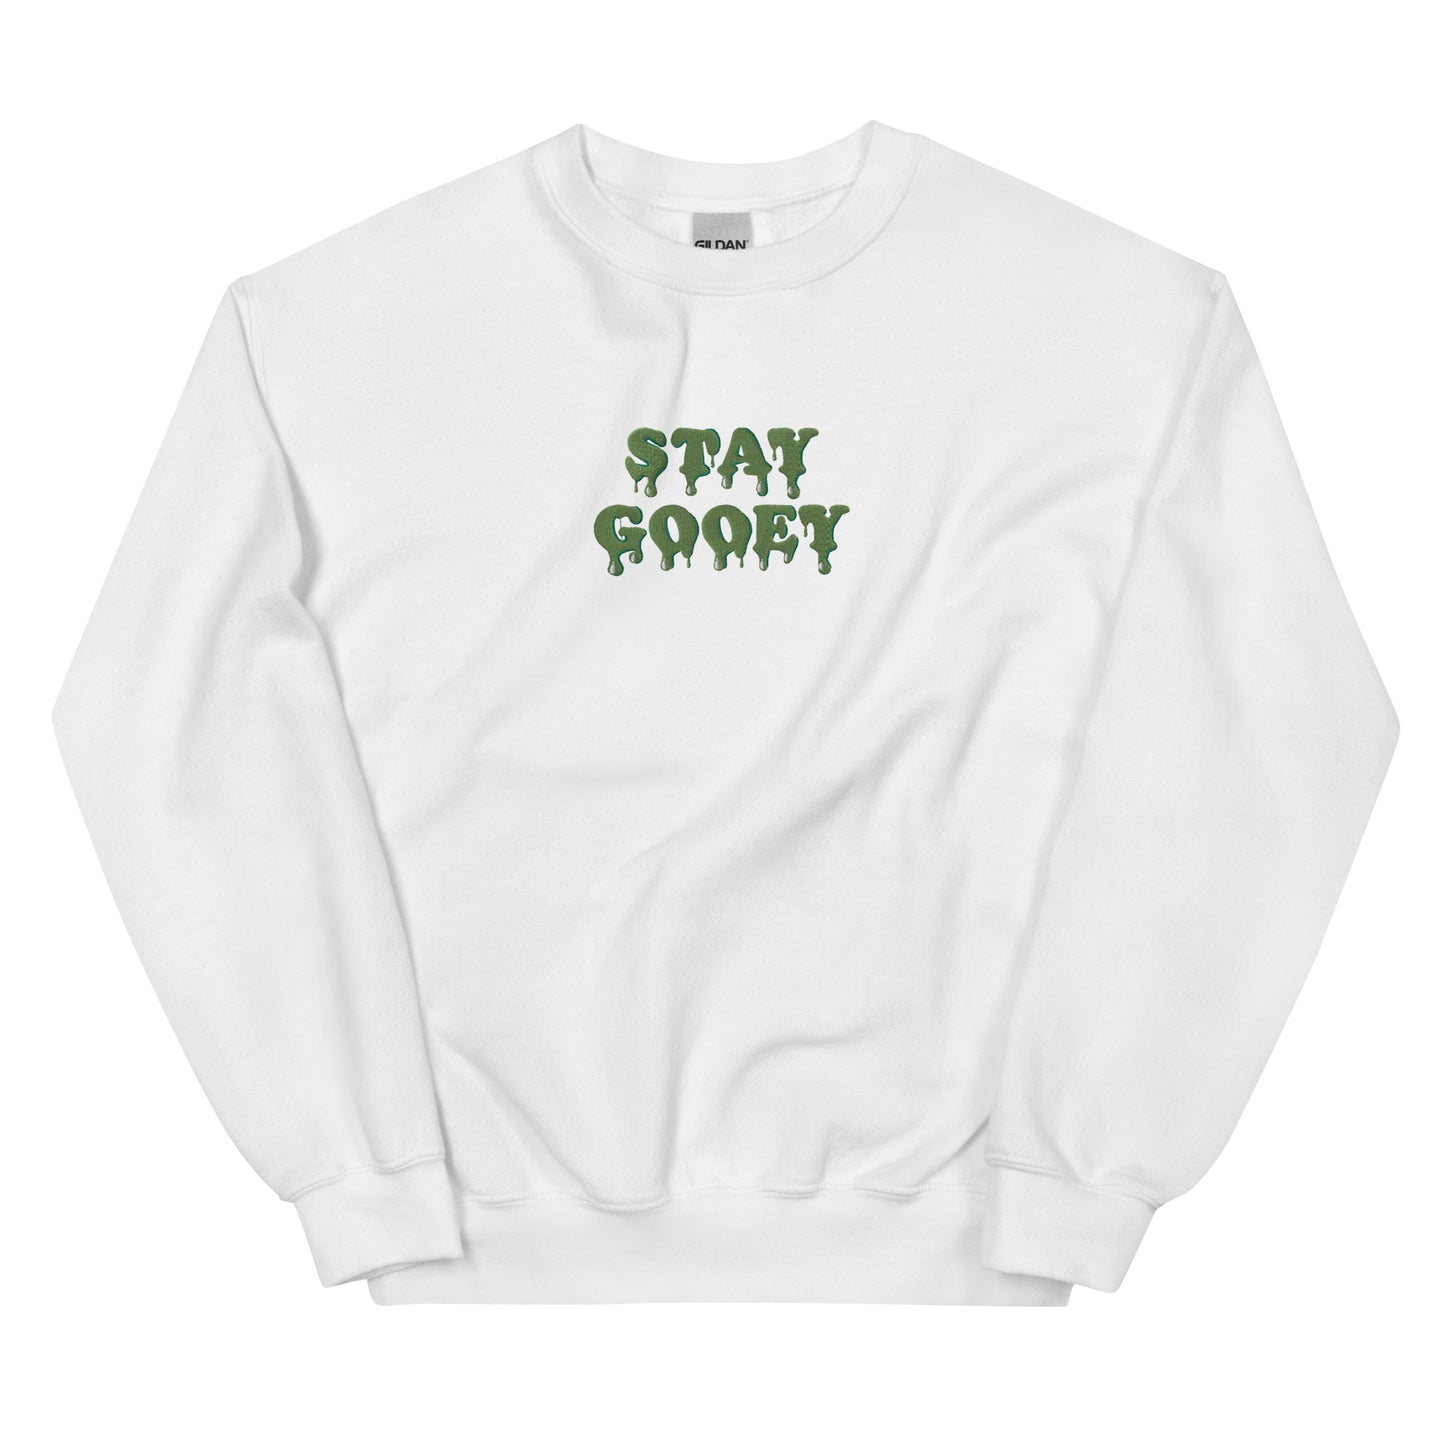 Stay Gooey Unisex Sweatshirt